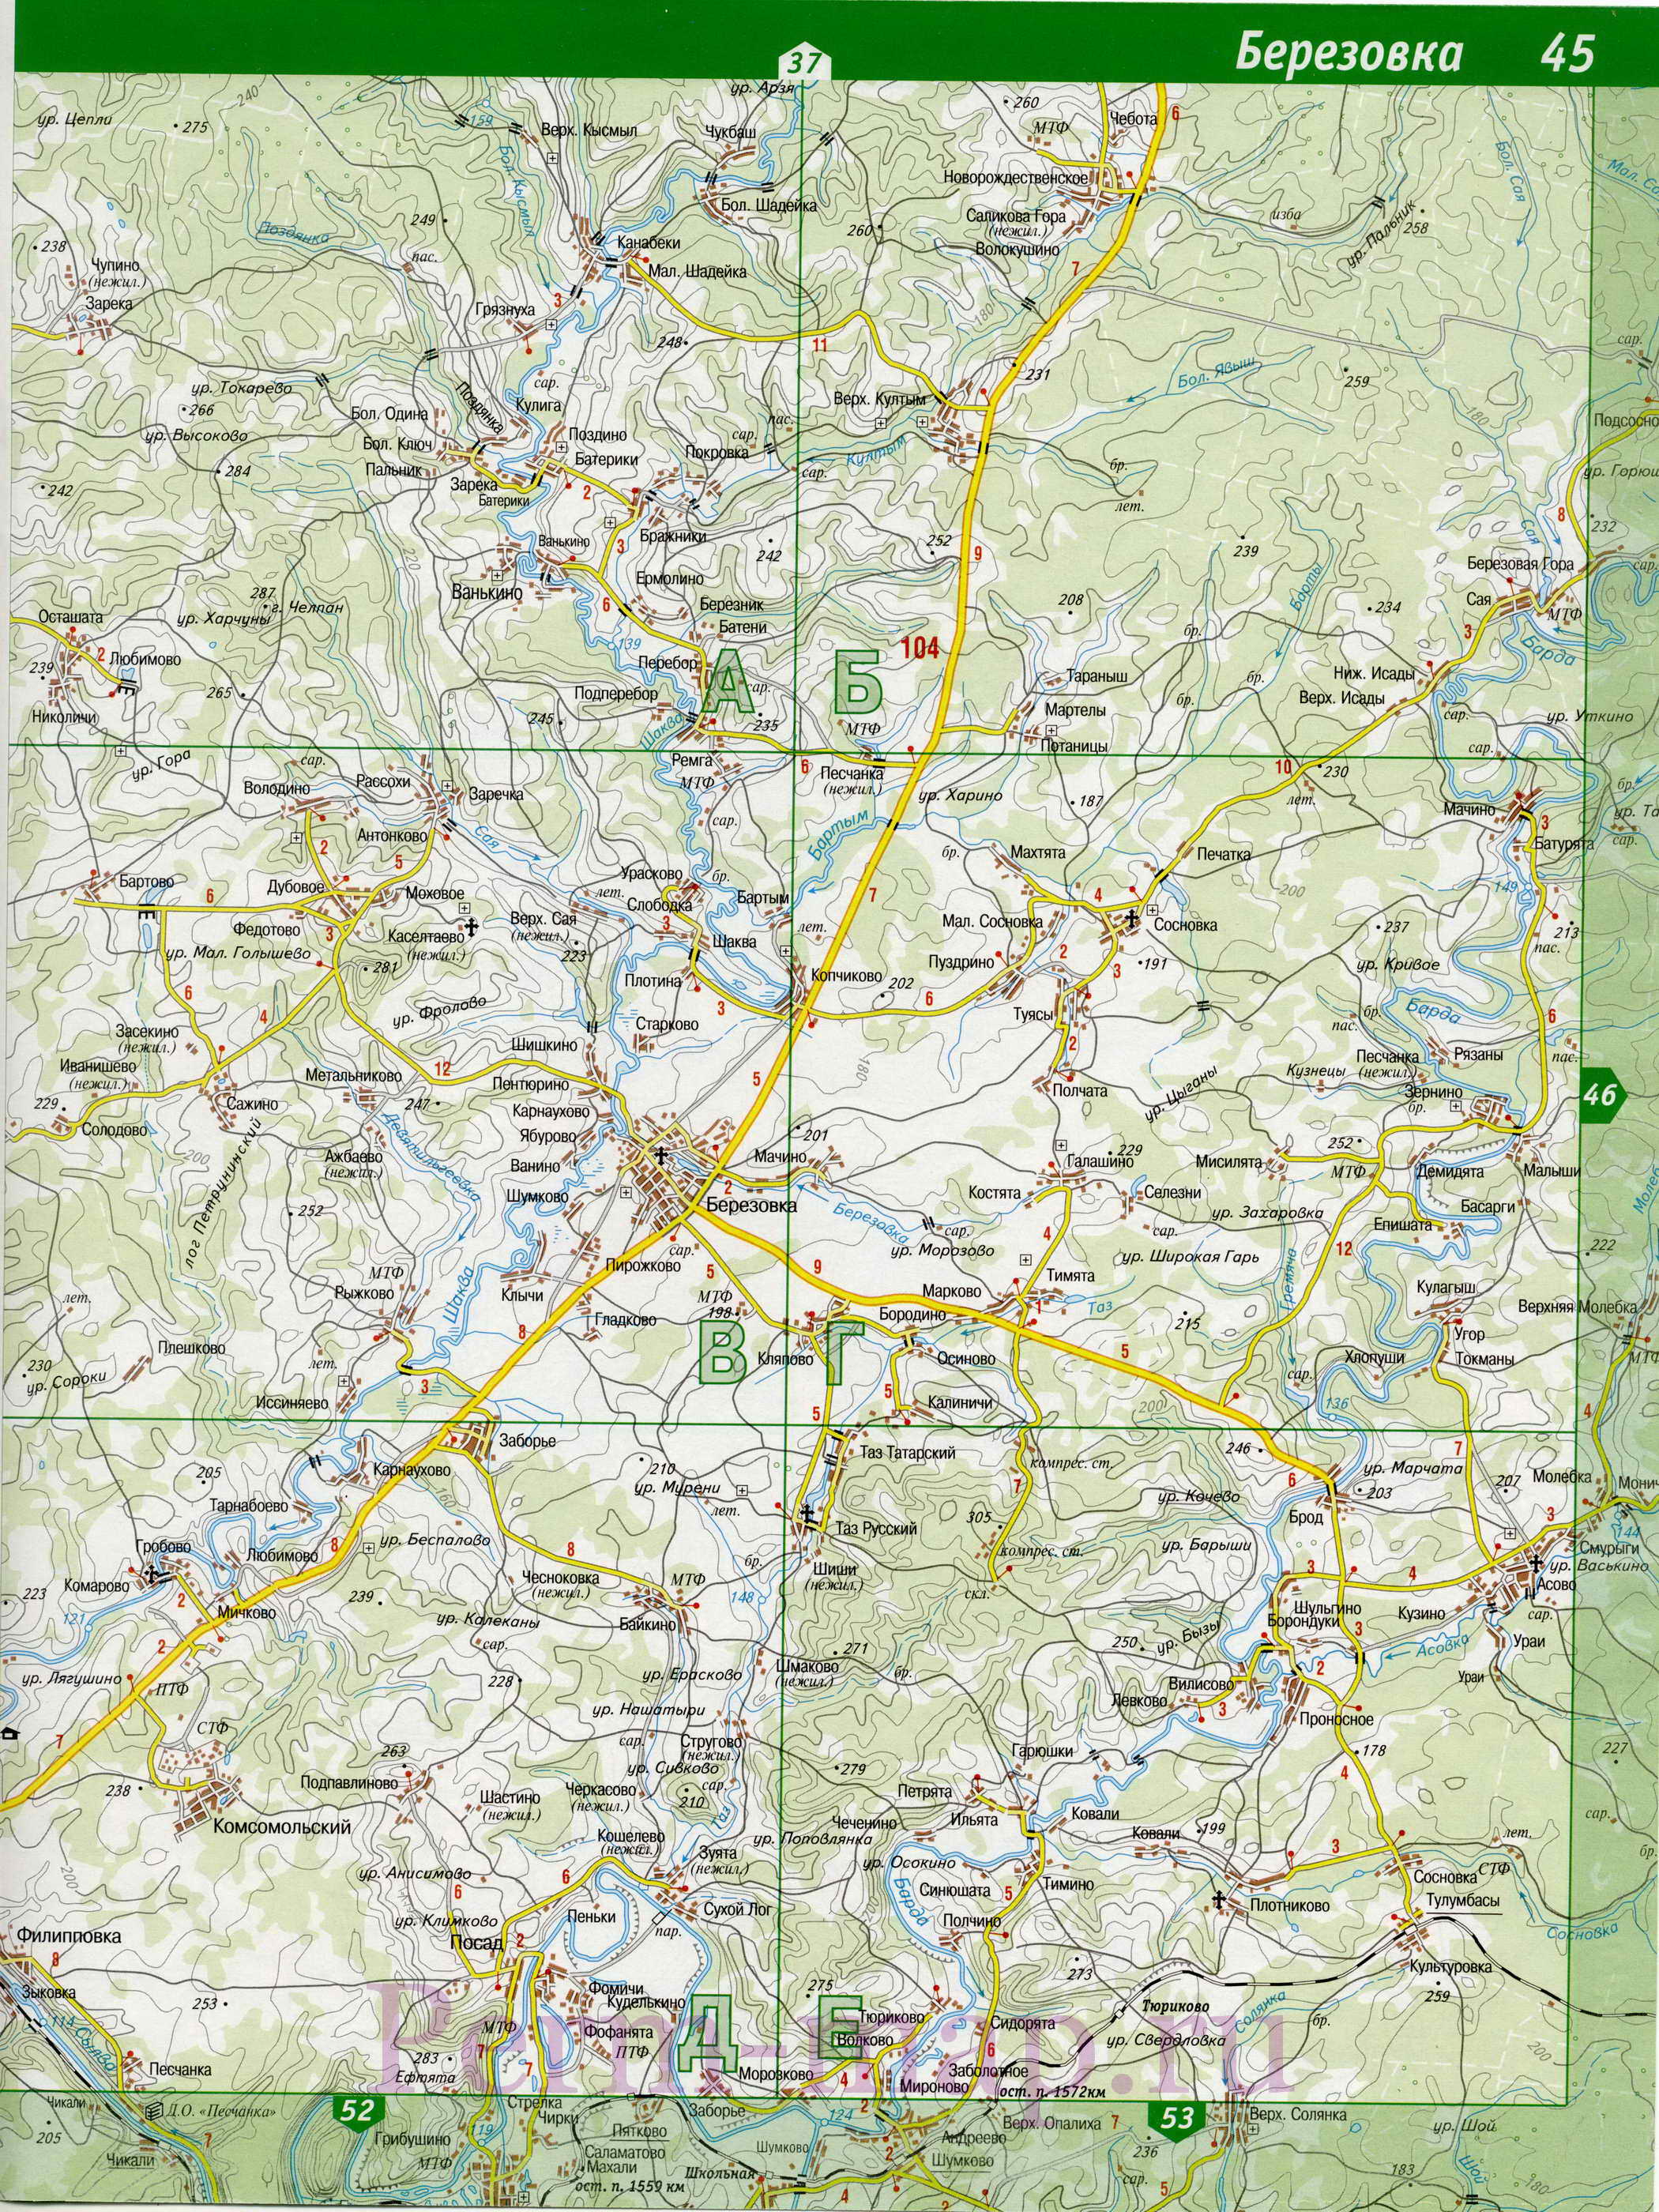  Карта Кунгура. Карта окрестностей города Кунгур, Пермский край, B0 - 